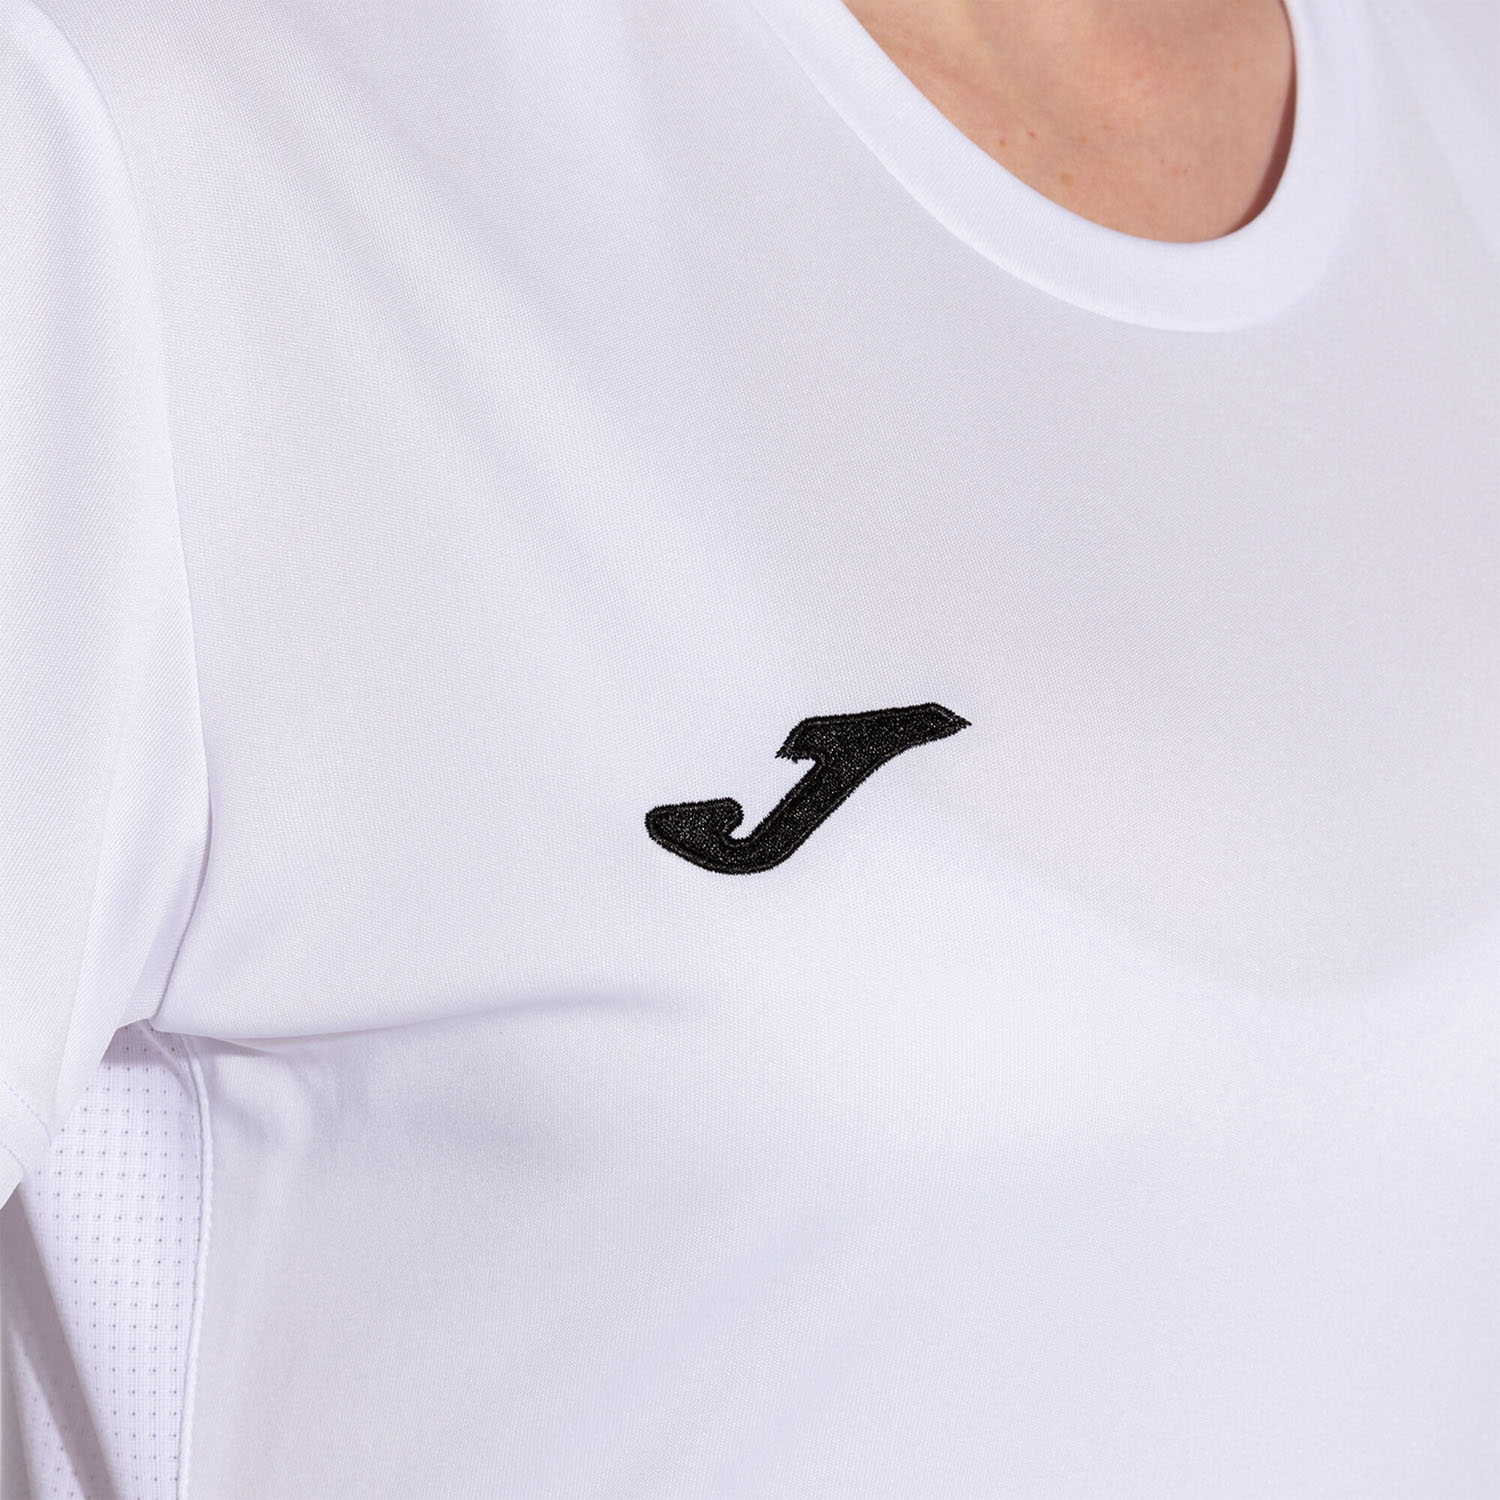 Joma Winner II Camiseta - White